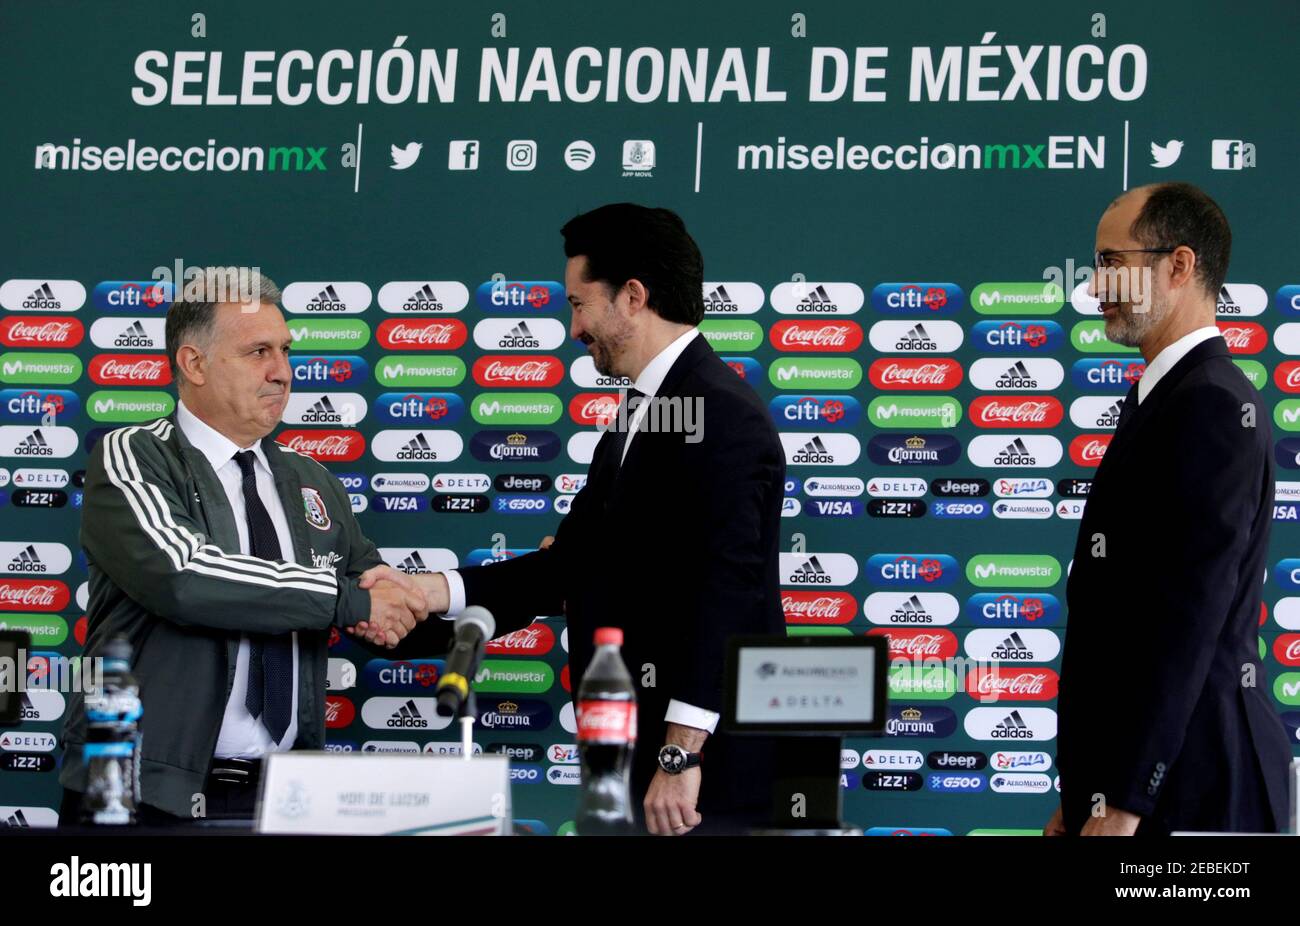 REFILE - CORRIGIENDO FECHA Fútbol - México - Martino presentado nuevo entrenador del equipo nacional de México, Ciudad de México, México - 7 de enero de 2019 entrenador argentino de